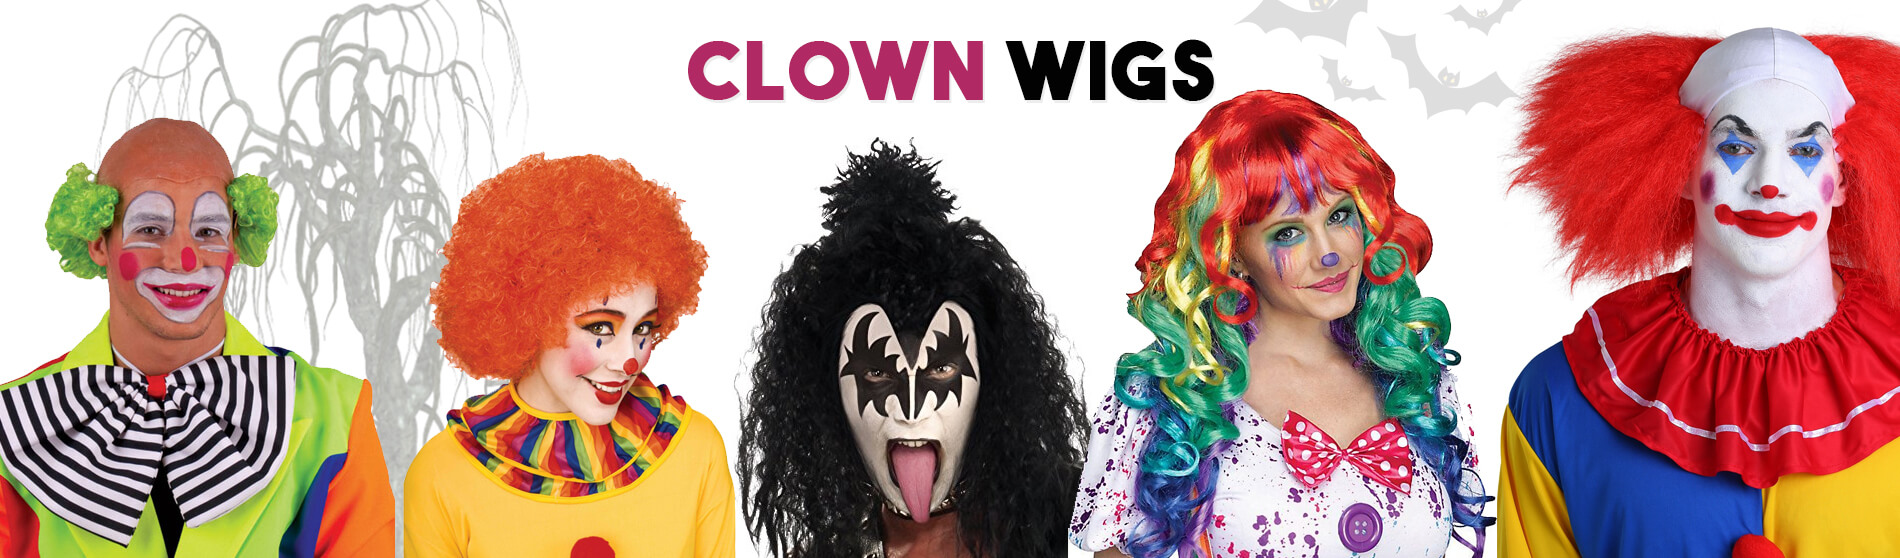 Glendale Halloween : Clown-Wigs